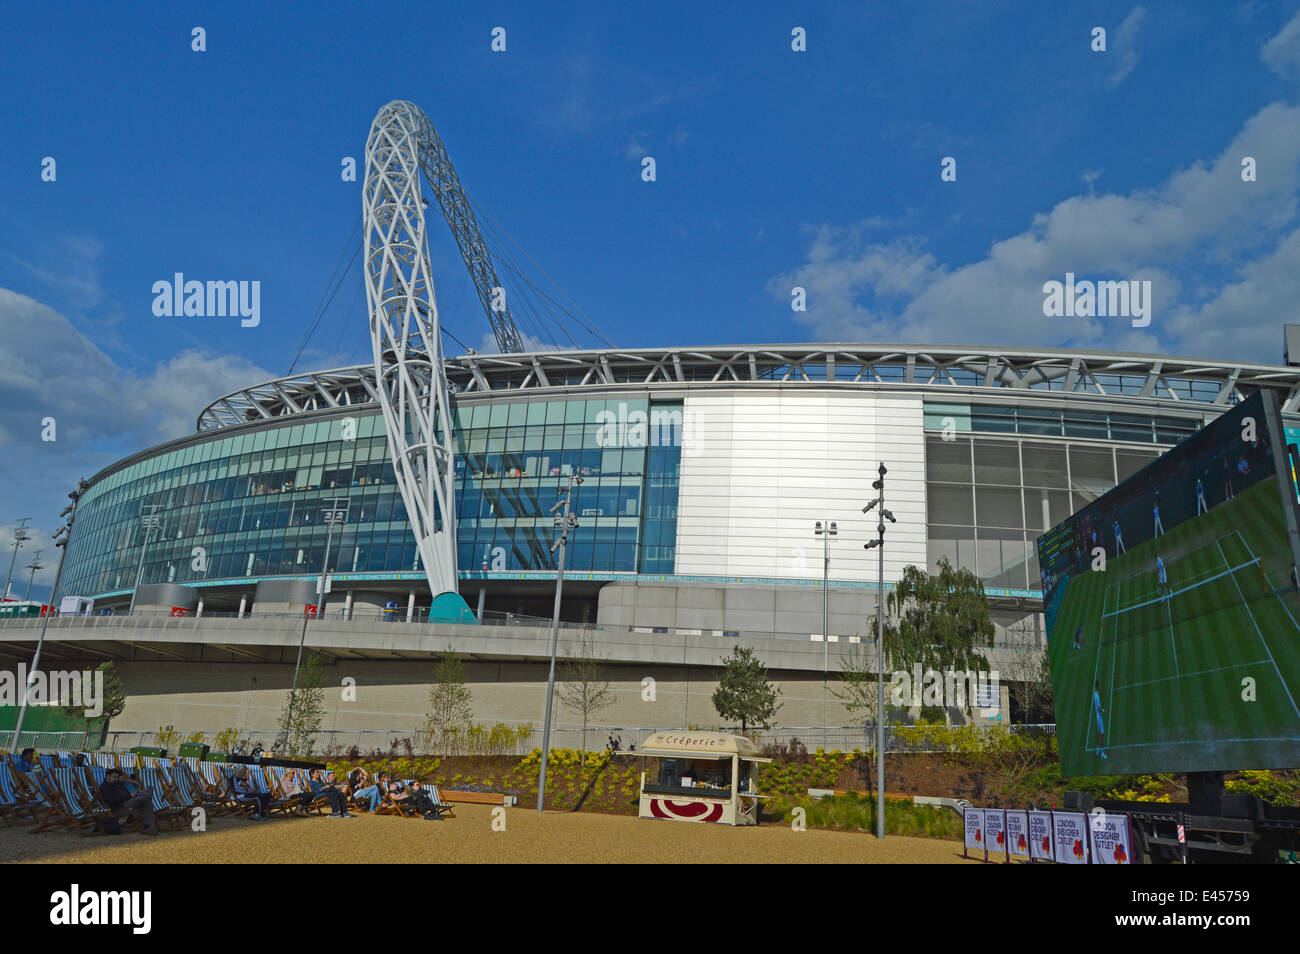 Jeu de tennis en direct sur grand écran à l'extérieur du stade de Wembley, London,UK Banque D'Images